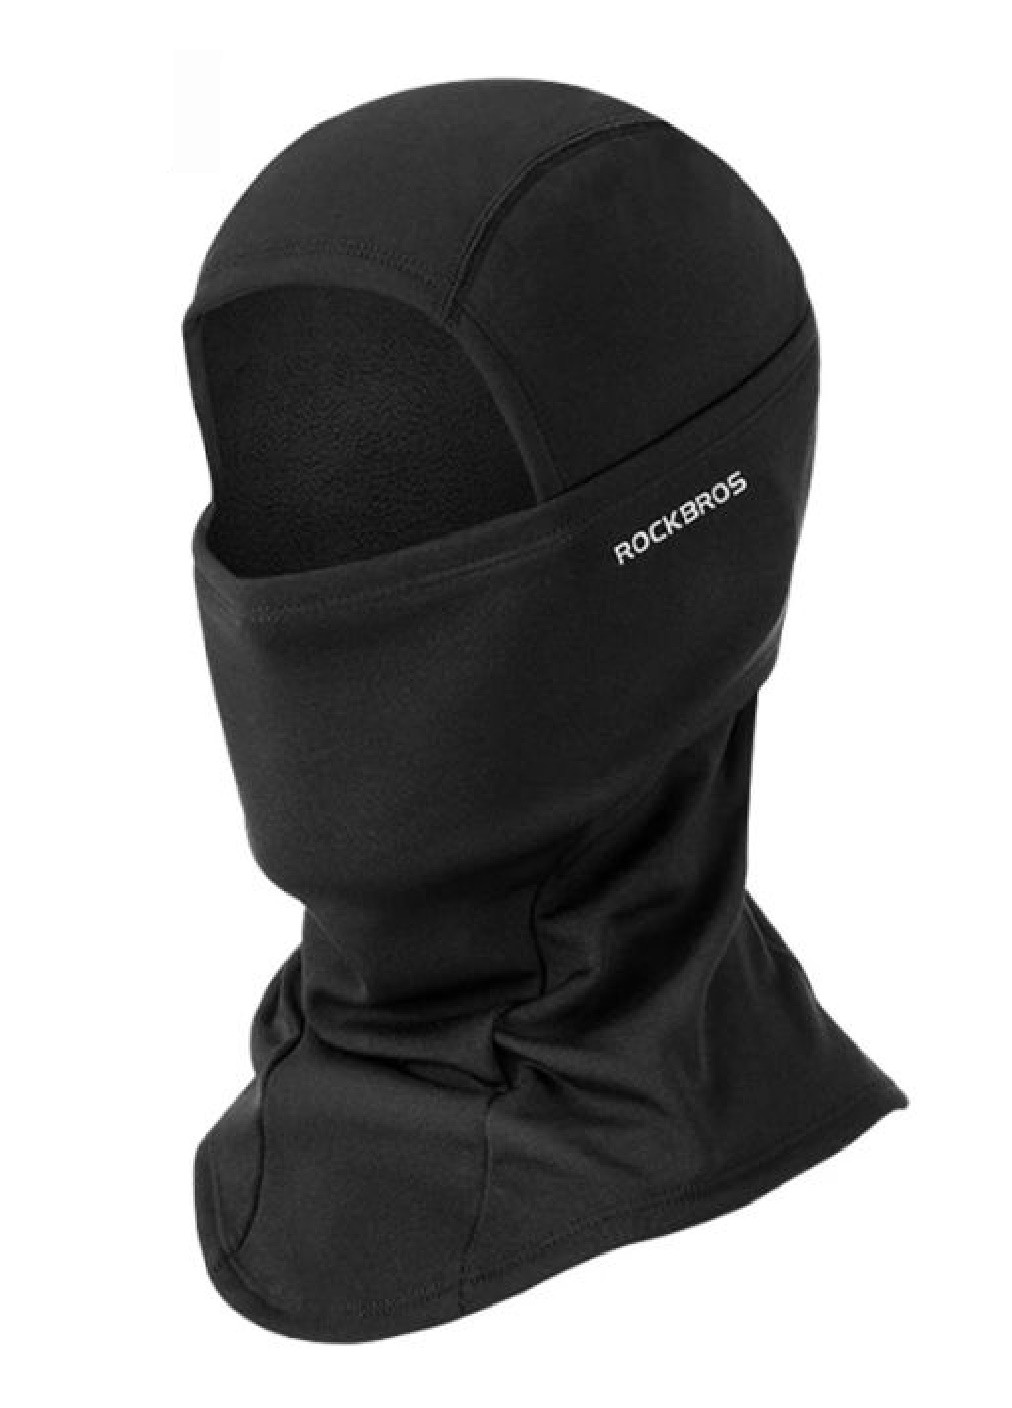 Francesco Marconi термо маска флисовая балаклава зимний бафф шарф подшлемник лыжная шапка (472807-prob) черная логотип черный кэжуал флис, полиэстер производство - Китай